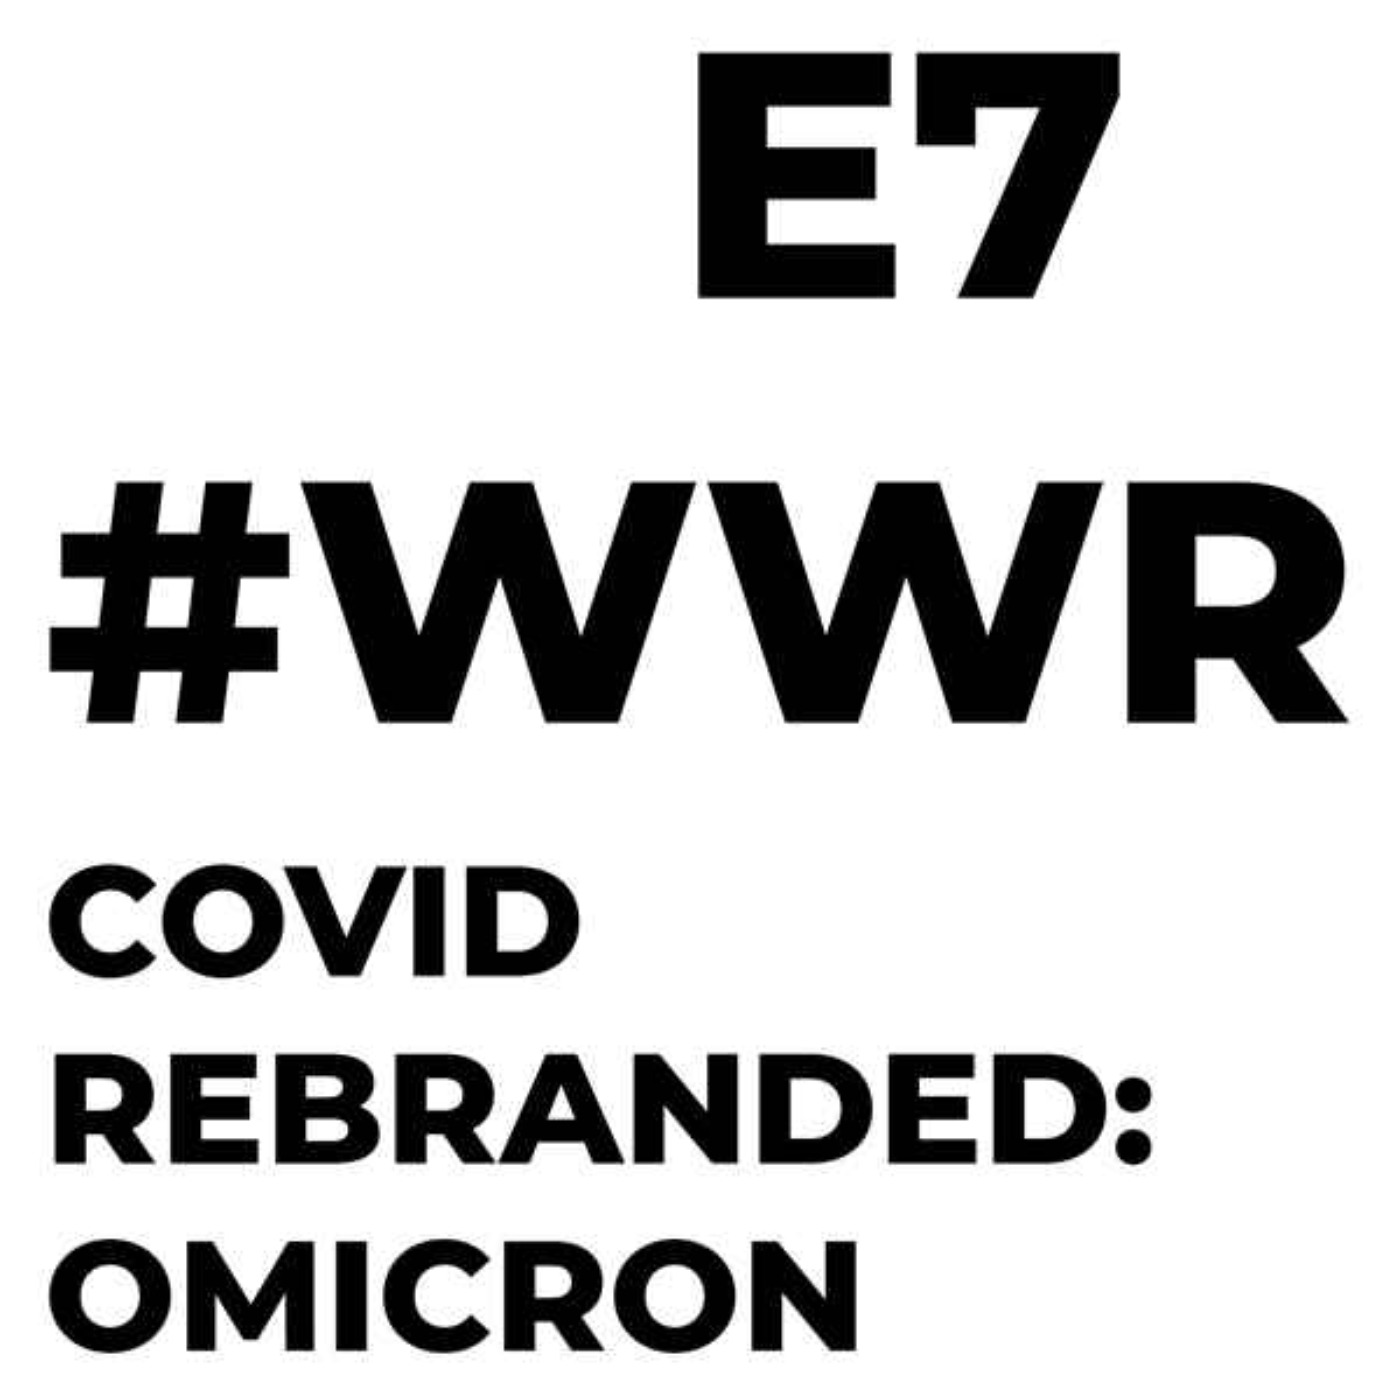 Covid Rebranded: Omicron